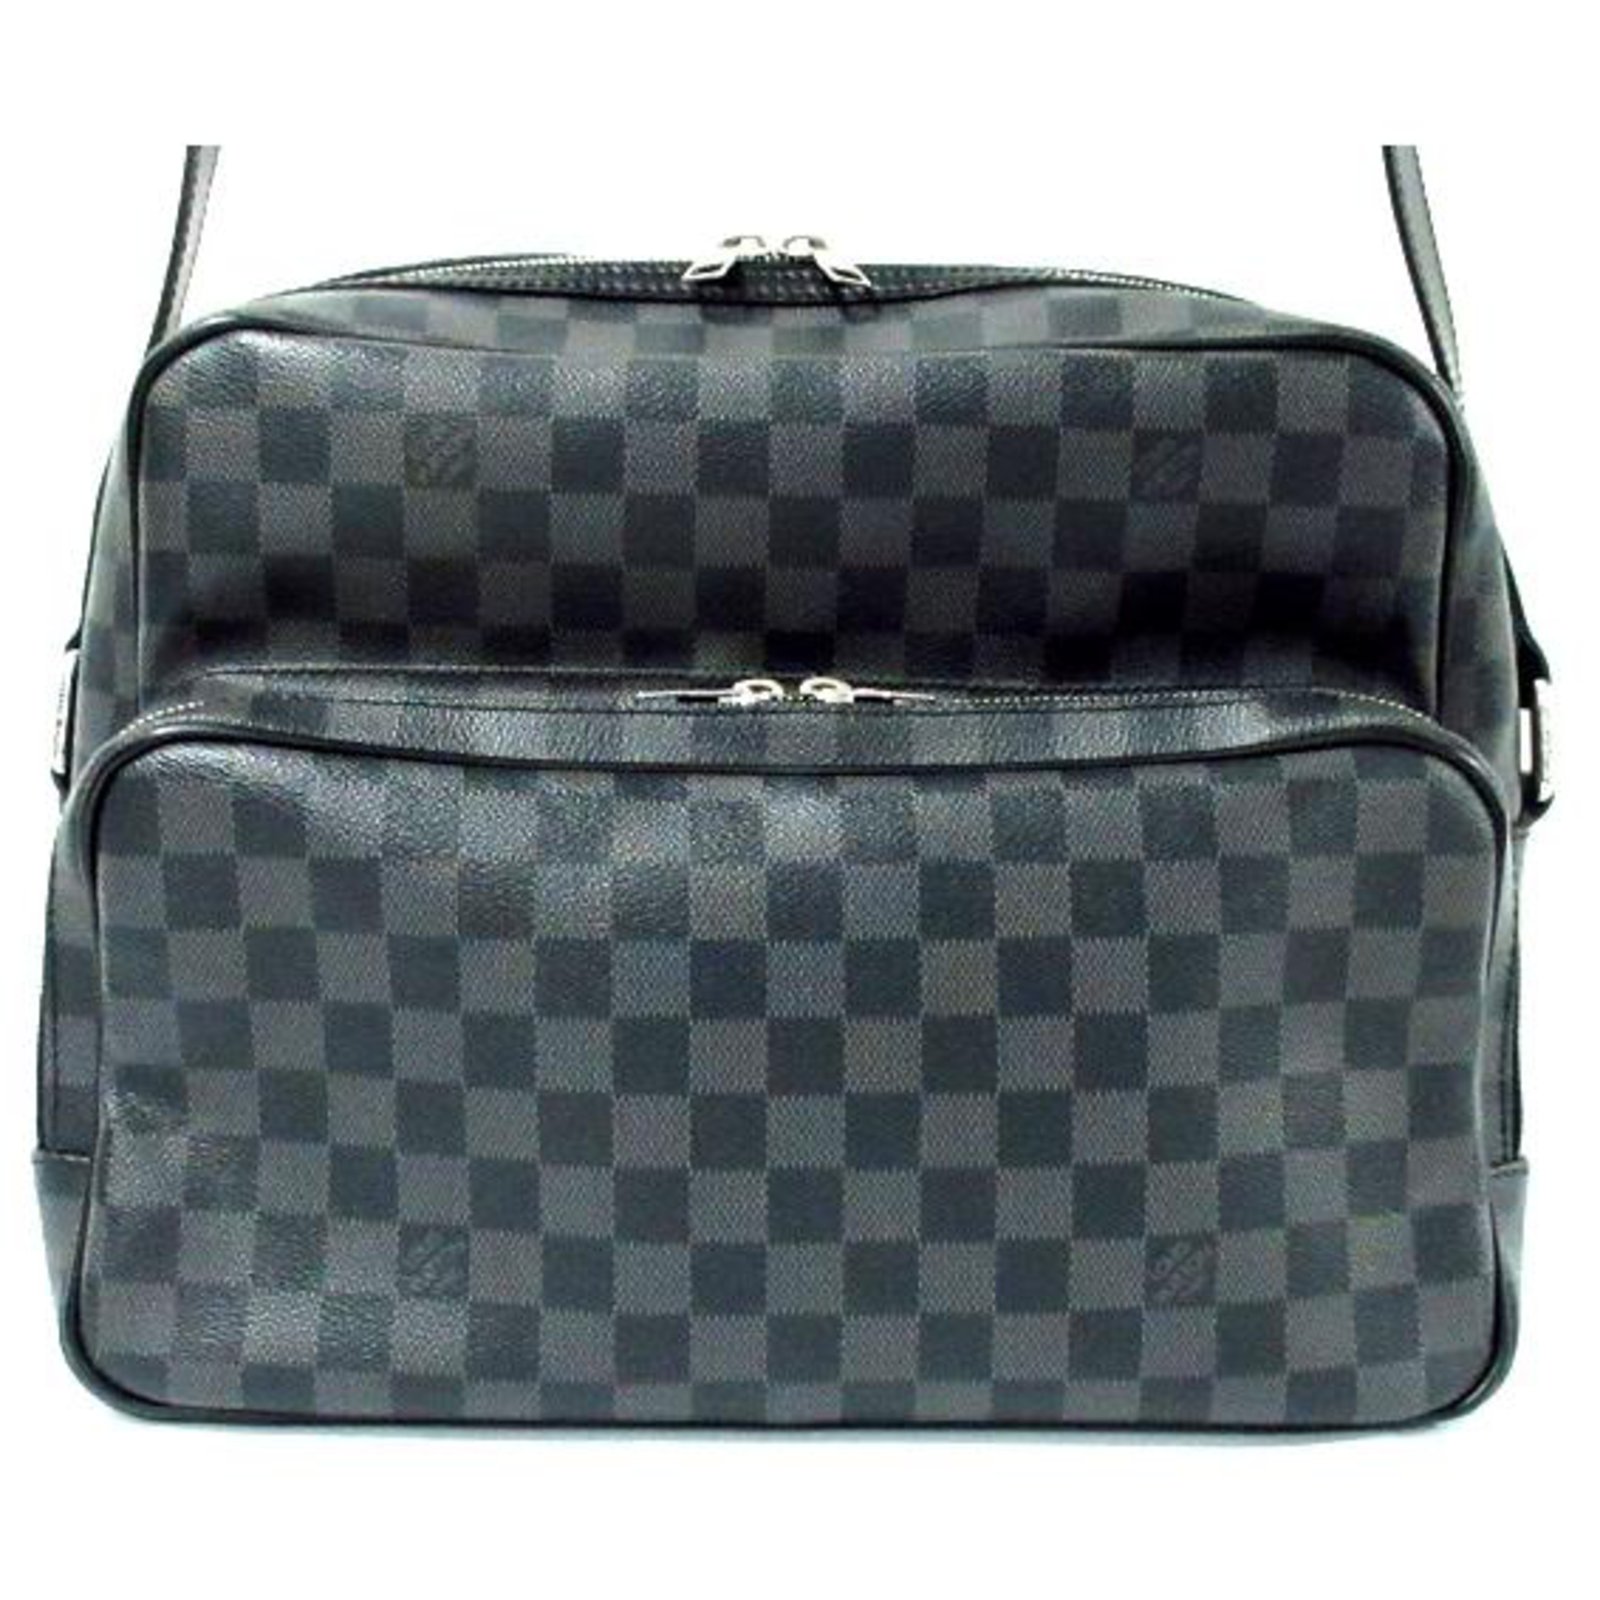 Louis Vuitton Black Fabric Adjustable Bag Shoulder Strap Louis